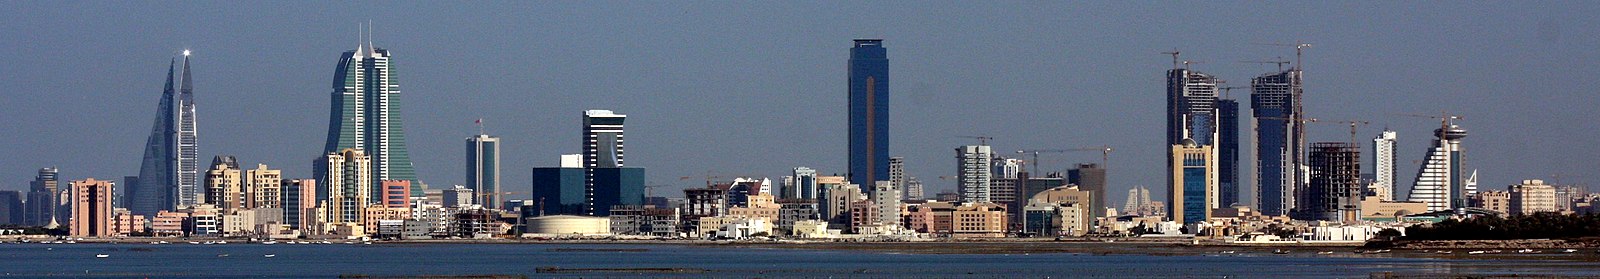 Een panorama van de skyline van Manama van links naar rechts: 1. De tweelingtorens van het Bahrain World Trade Center. 2. De tweelingtorens van de Bahrain Financial Harbour. 3. De Nationale Bank van Bahrein-toren (het kleine gebouw naast de BFH). 4. De Almoayyed Tower (de middelste wolkenkrabber). 5. Het Abraj Al Lulu project (drie torens in aanbouw rechts)